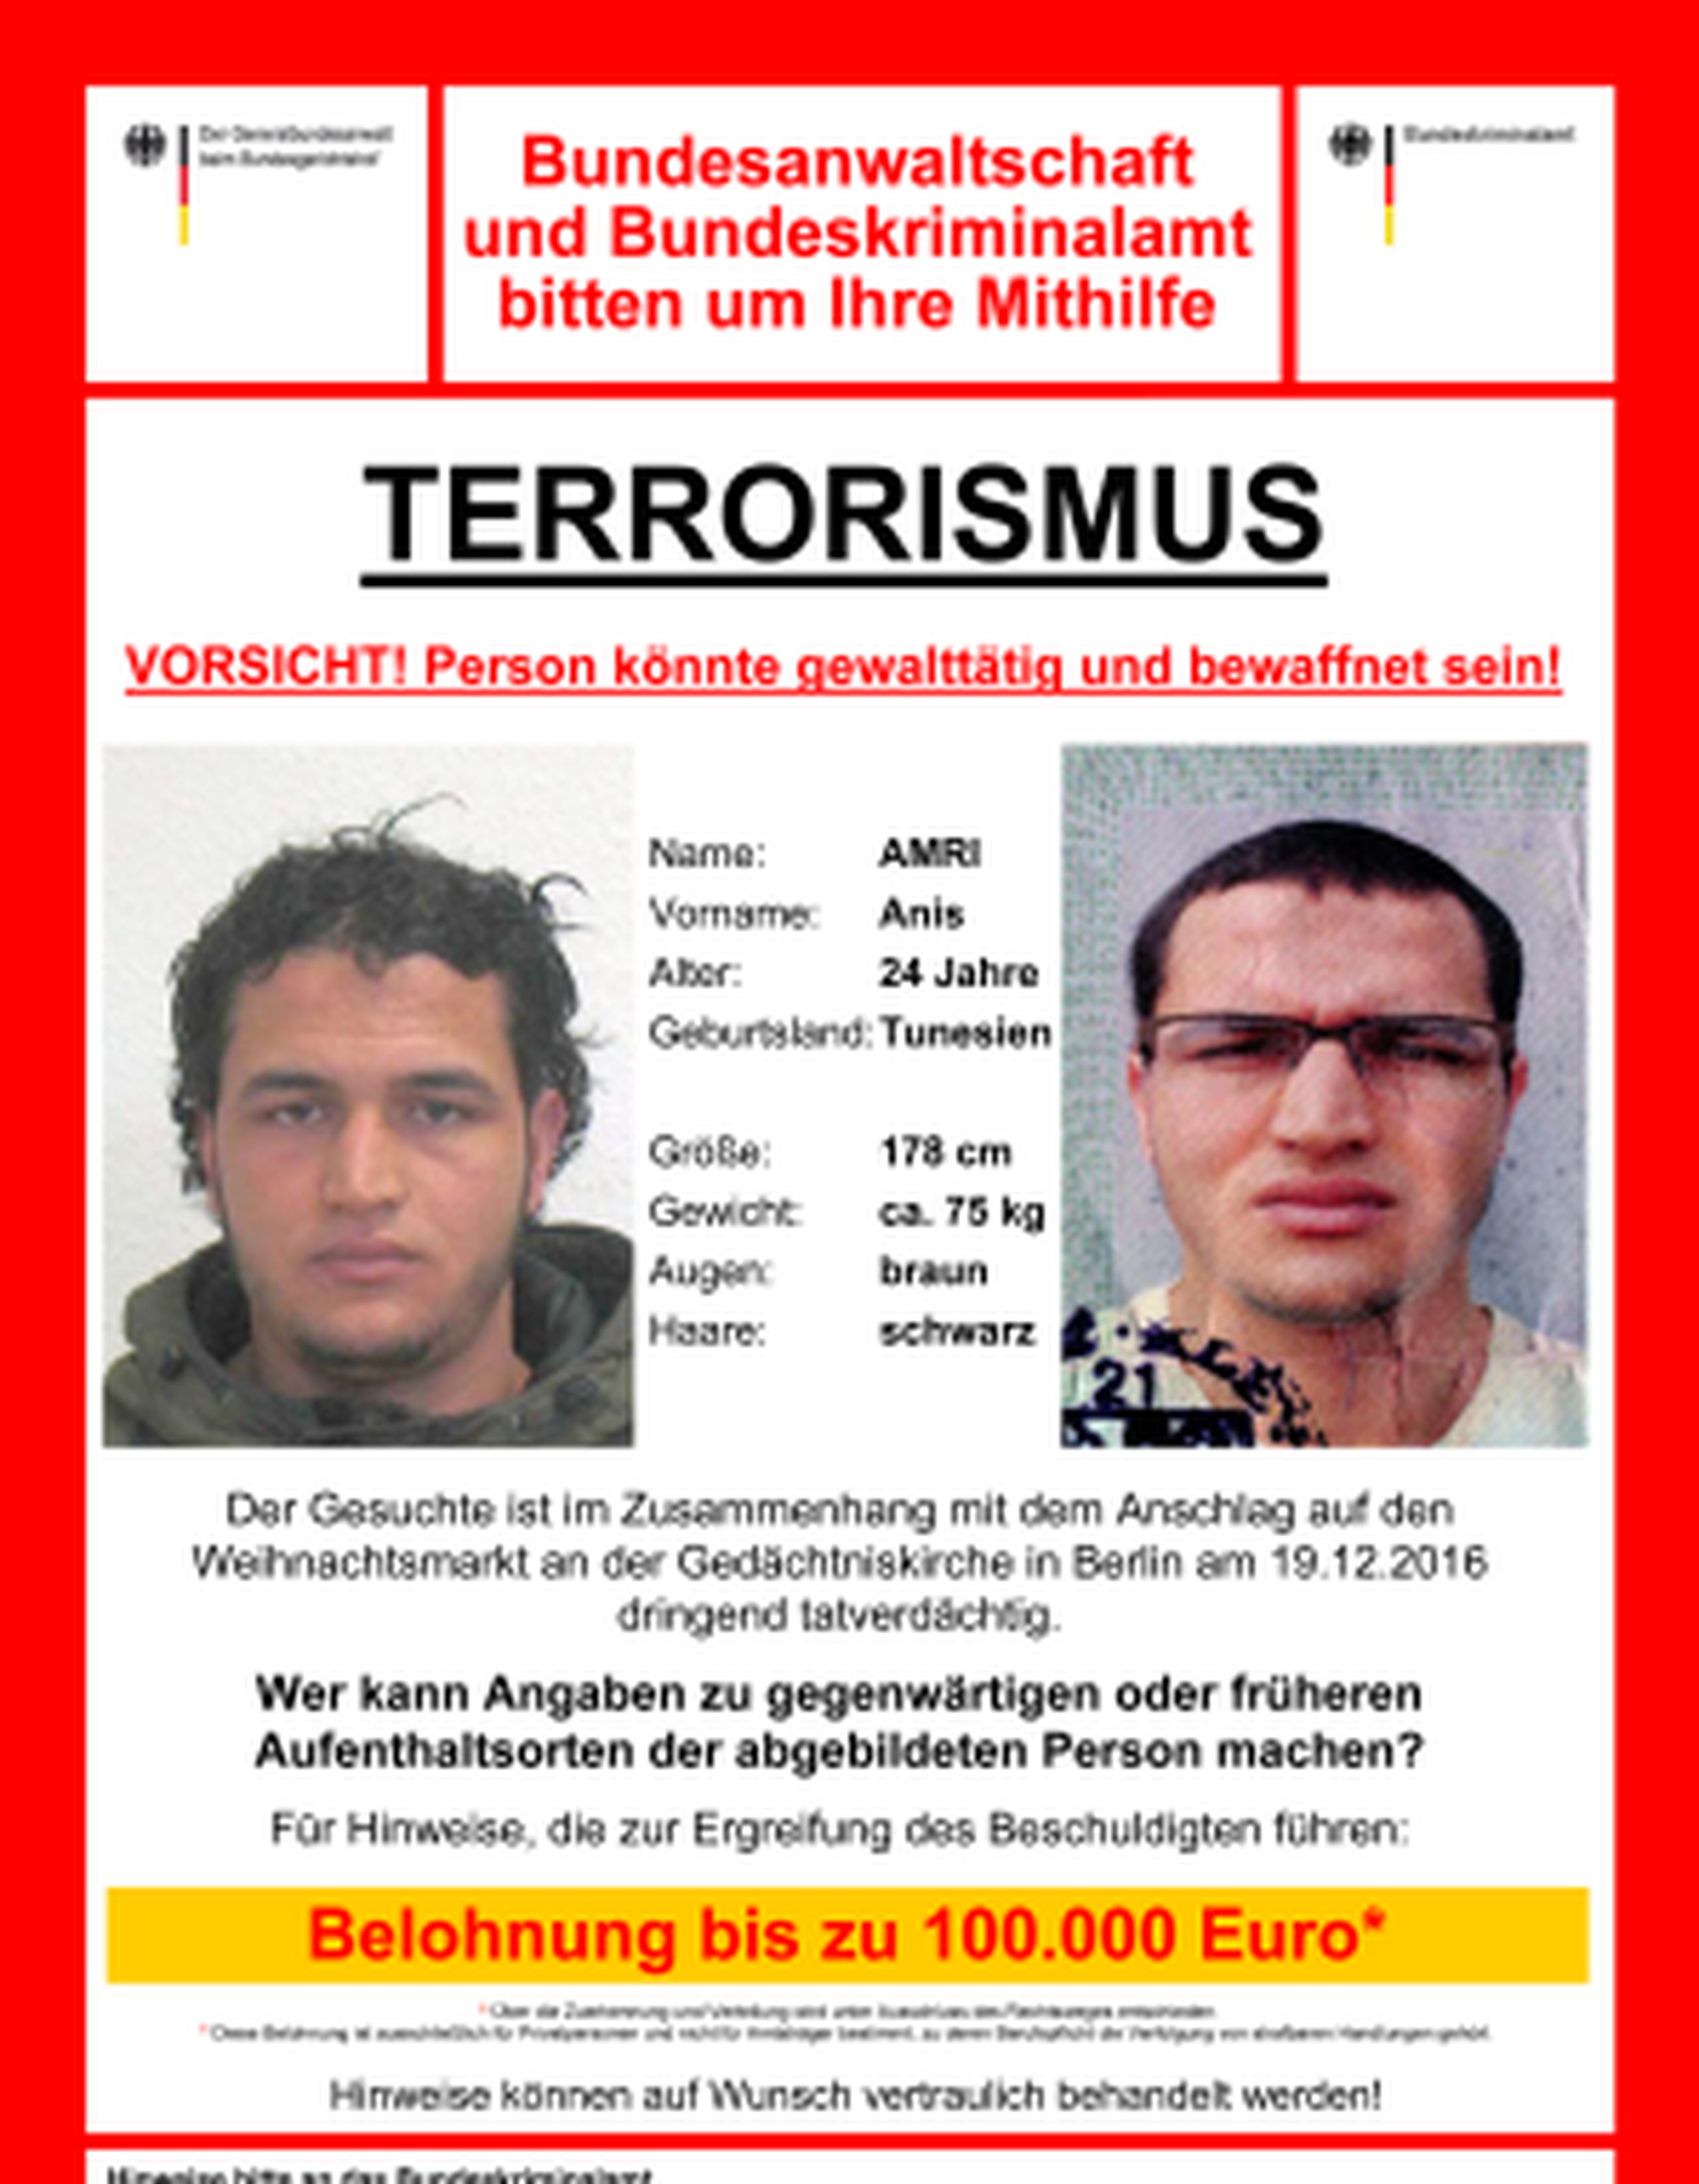 La policía federal alemana emitió un aviso de búsqueda contra Anis Amri con una recompesa de 100,000 euros. (German police via AP)
